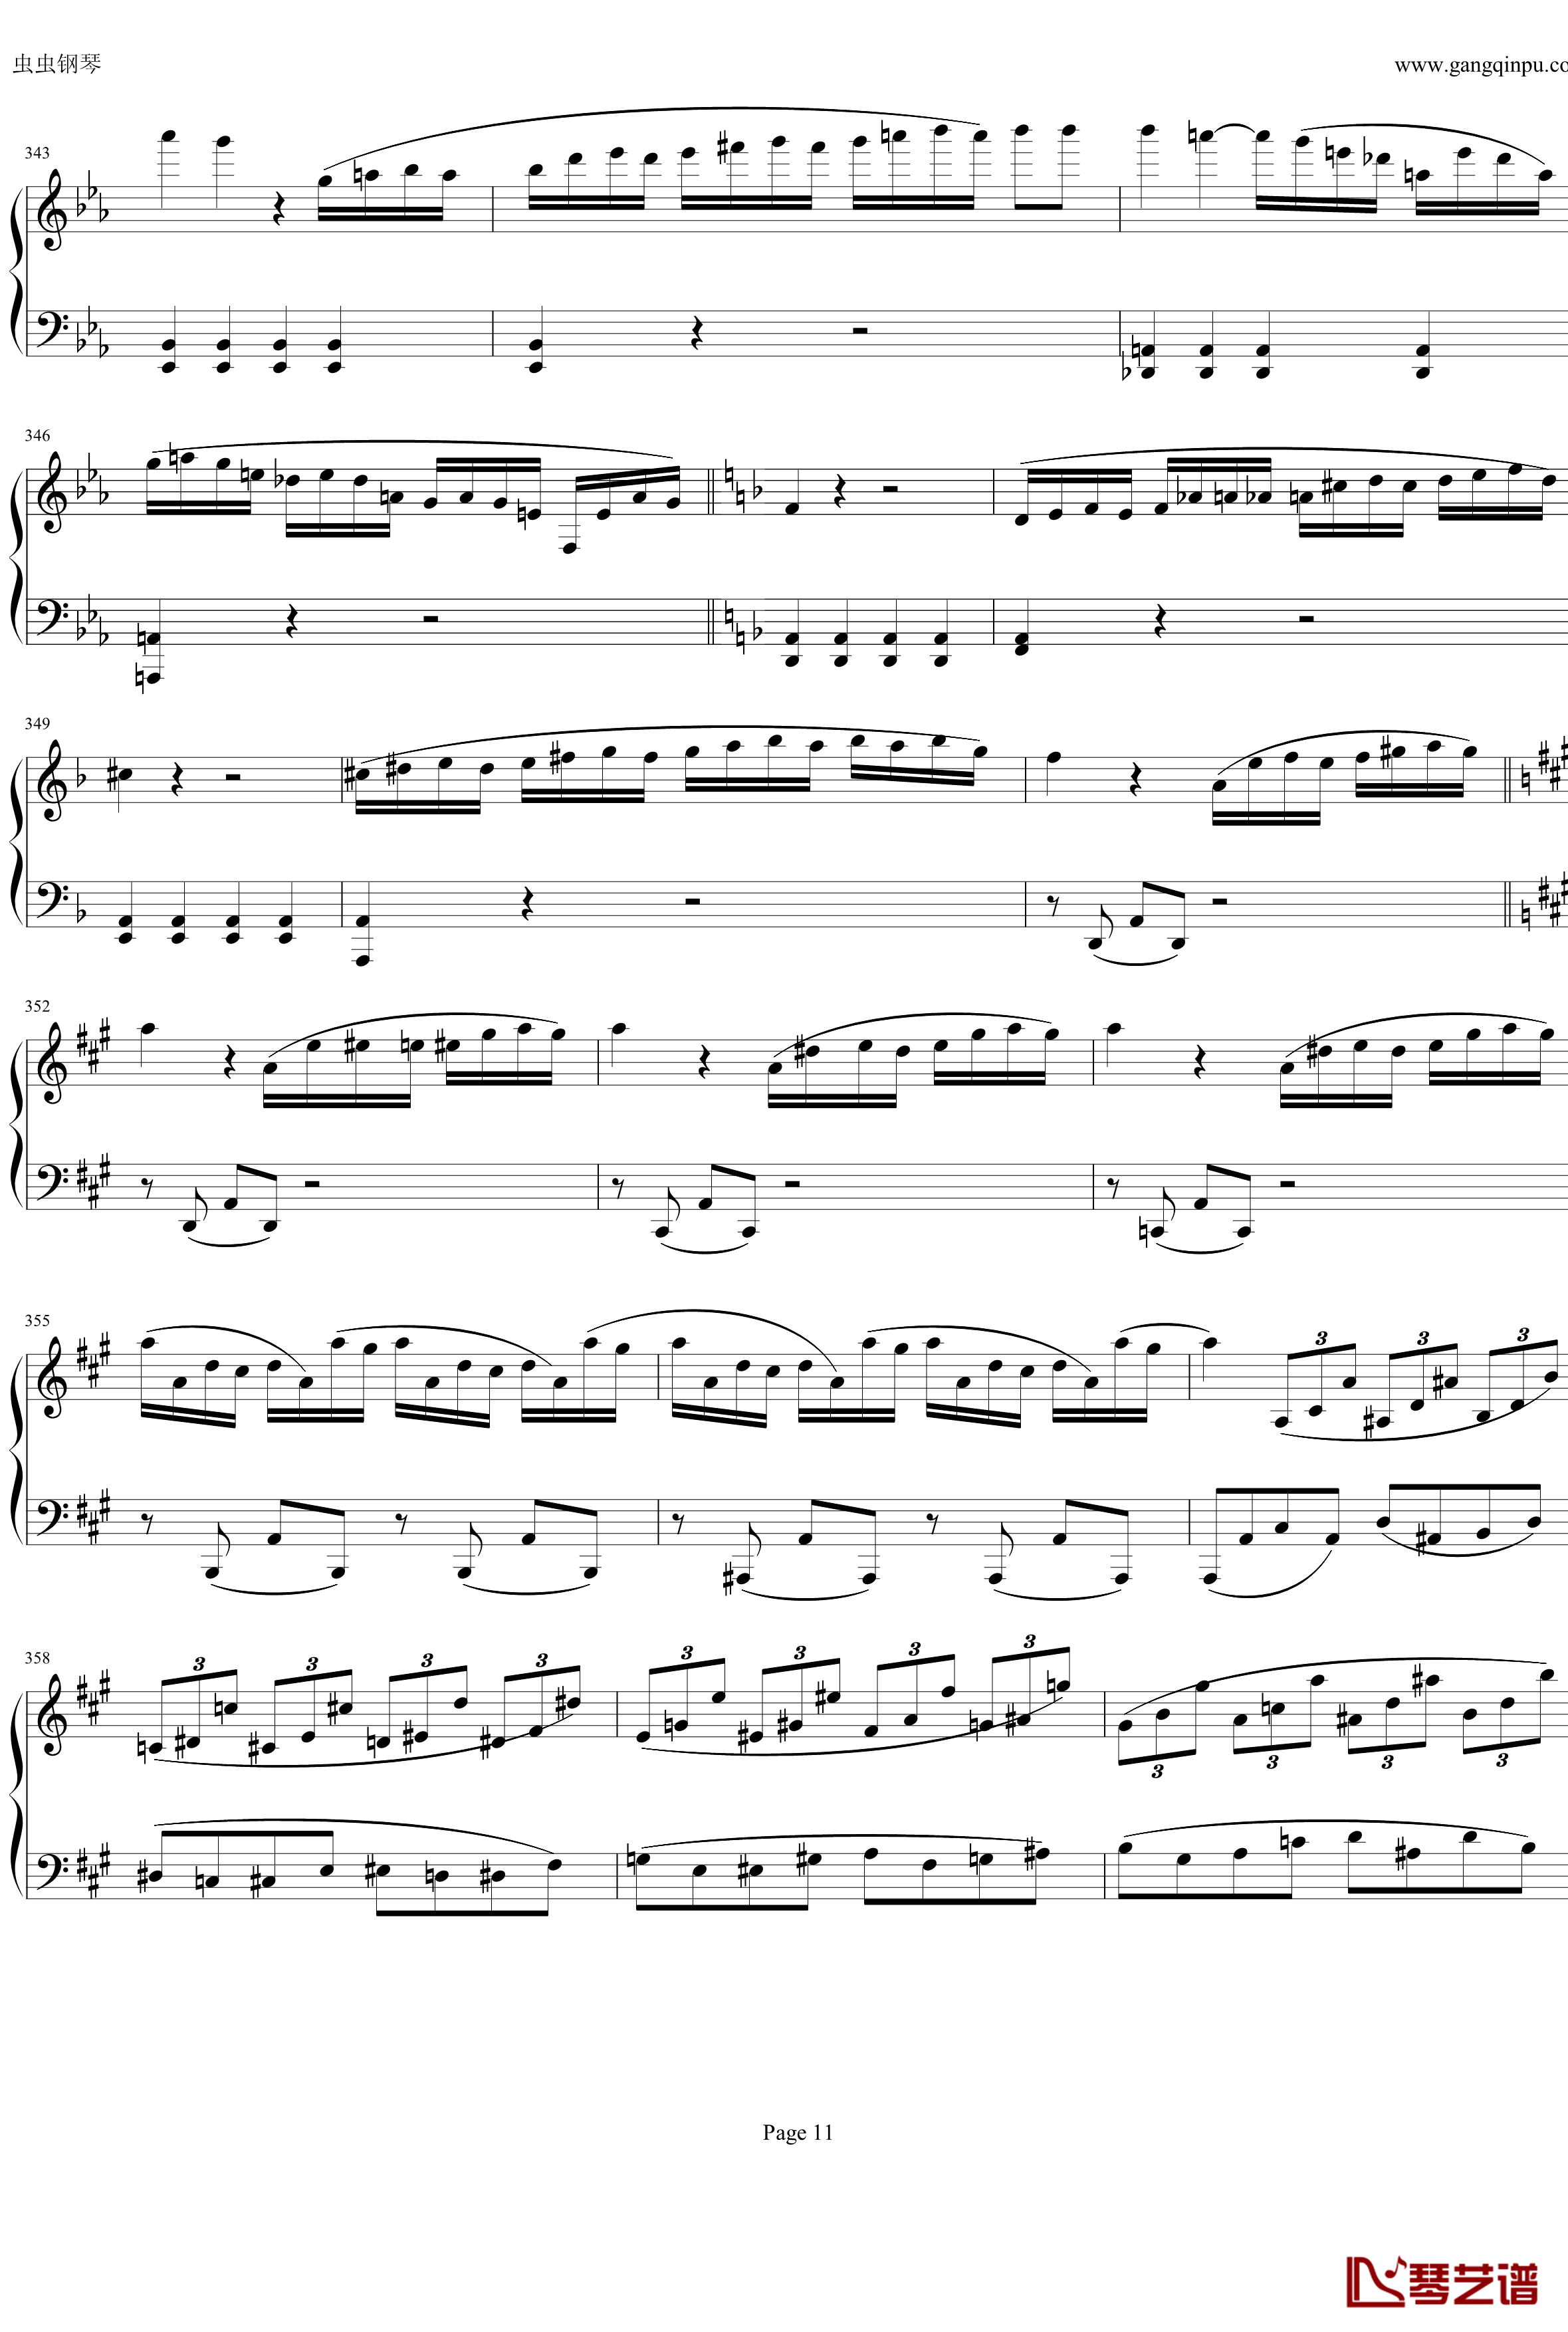 钢琴协奏曲Op61第一乐章钢琴谱-贝多芬-beethoven11